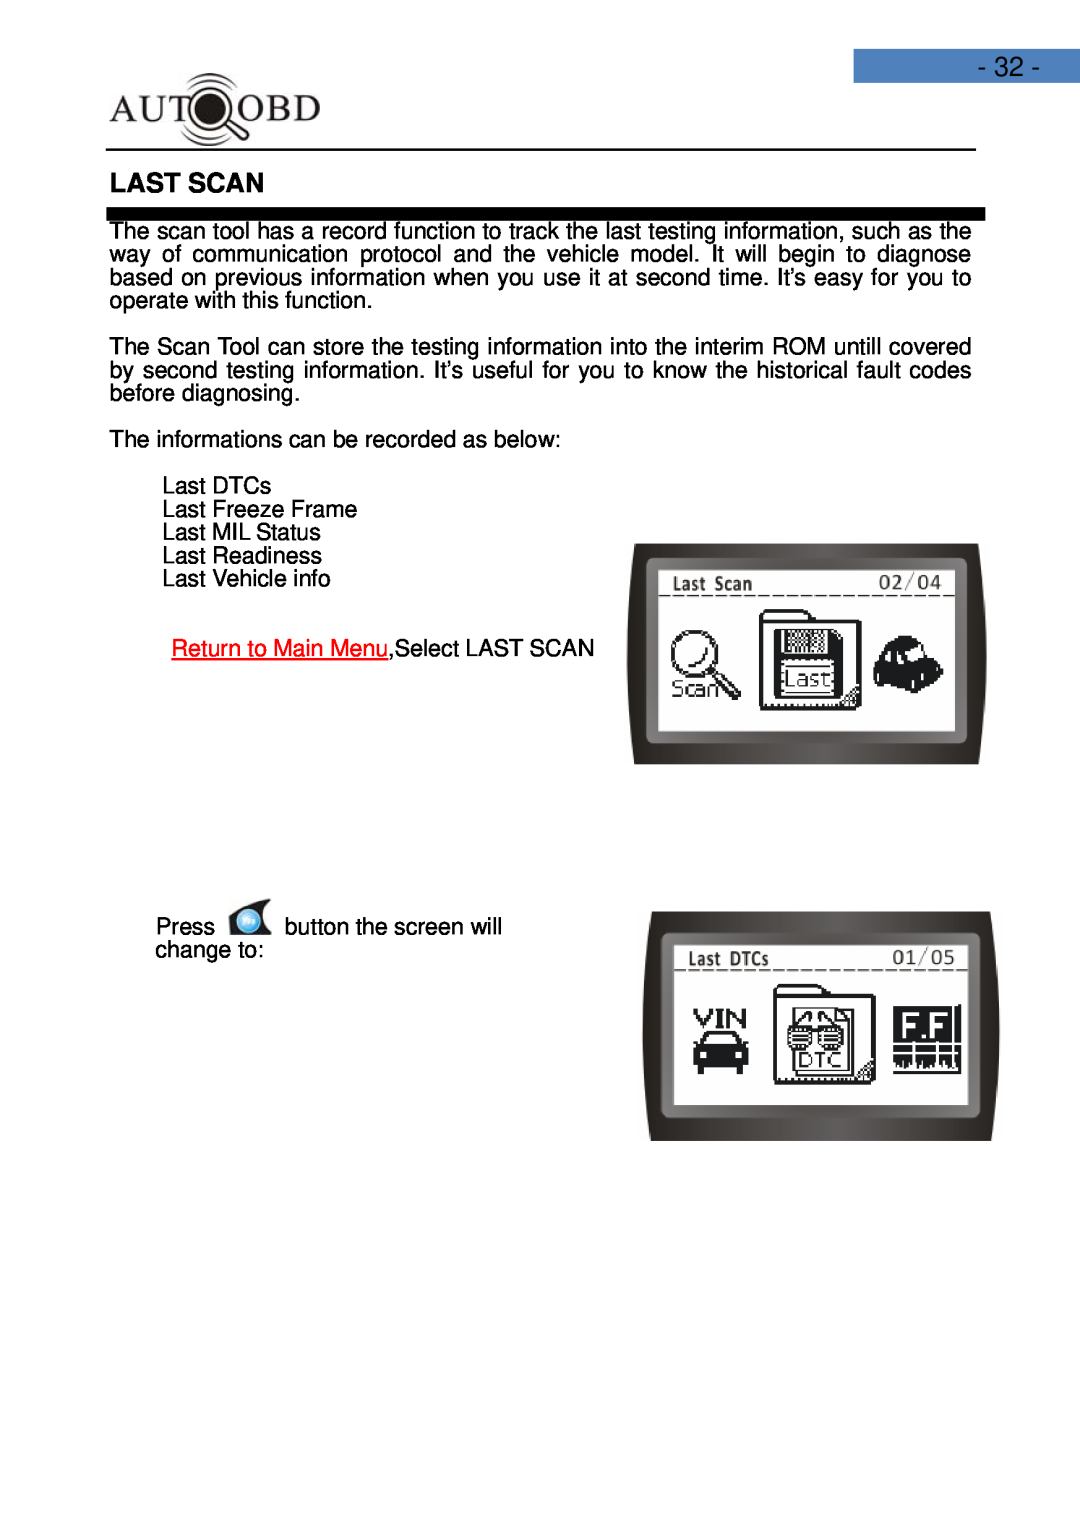 Daewoo AD100 user manual Last Scan, Return to Main Menu,Select LAST SCAN 